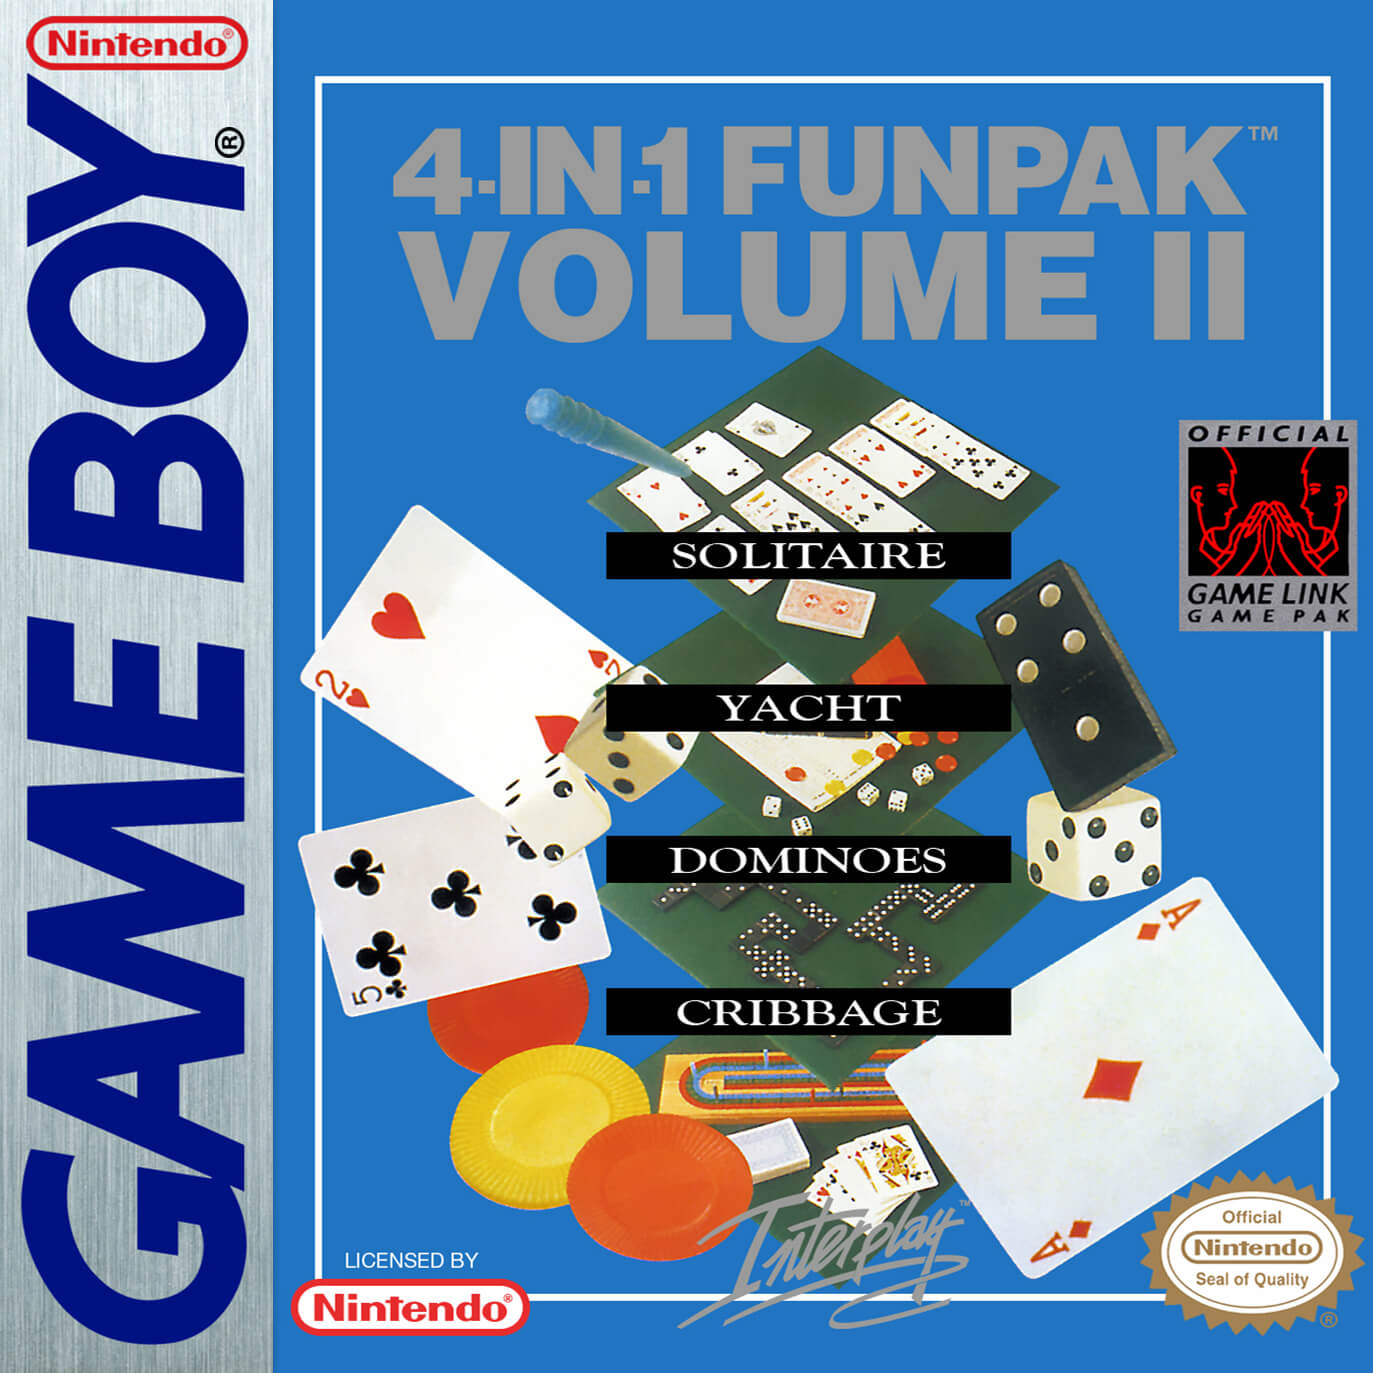 4-in-1 Funpak: Volume II